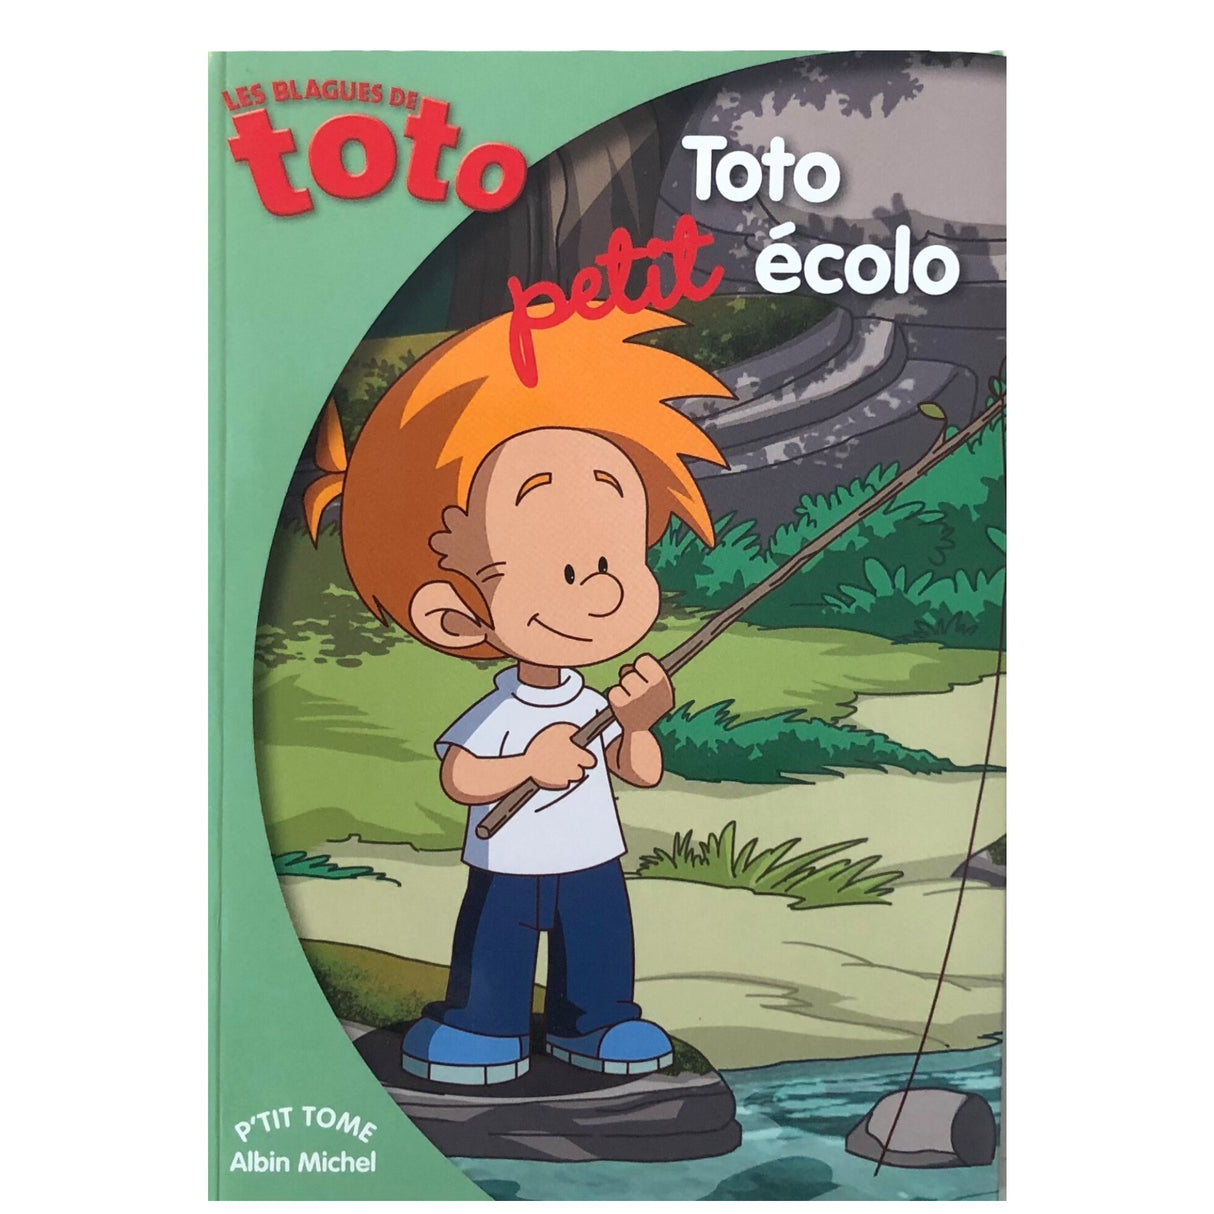 A second chance - Toto petit ecolo - Lebanon